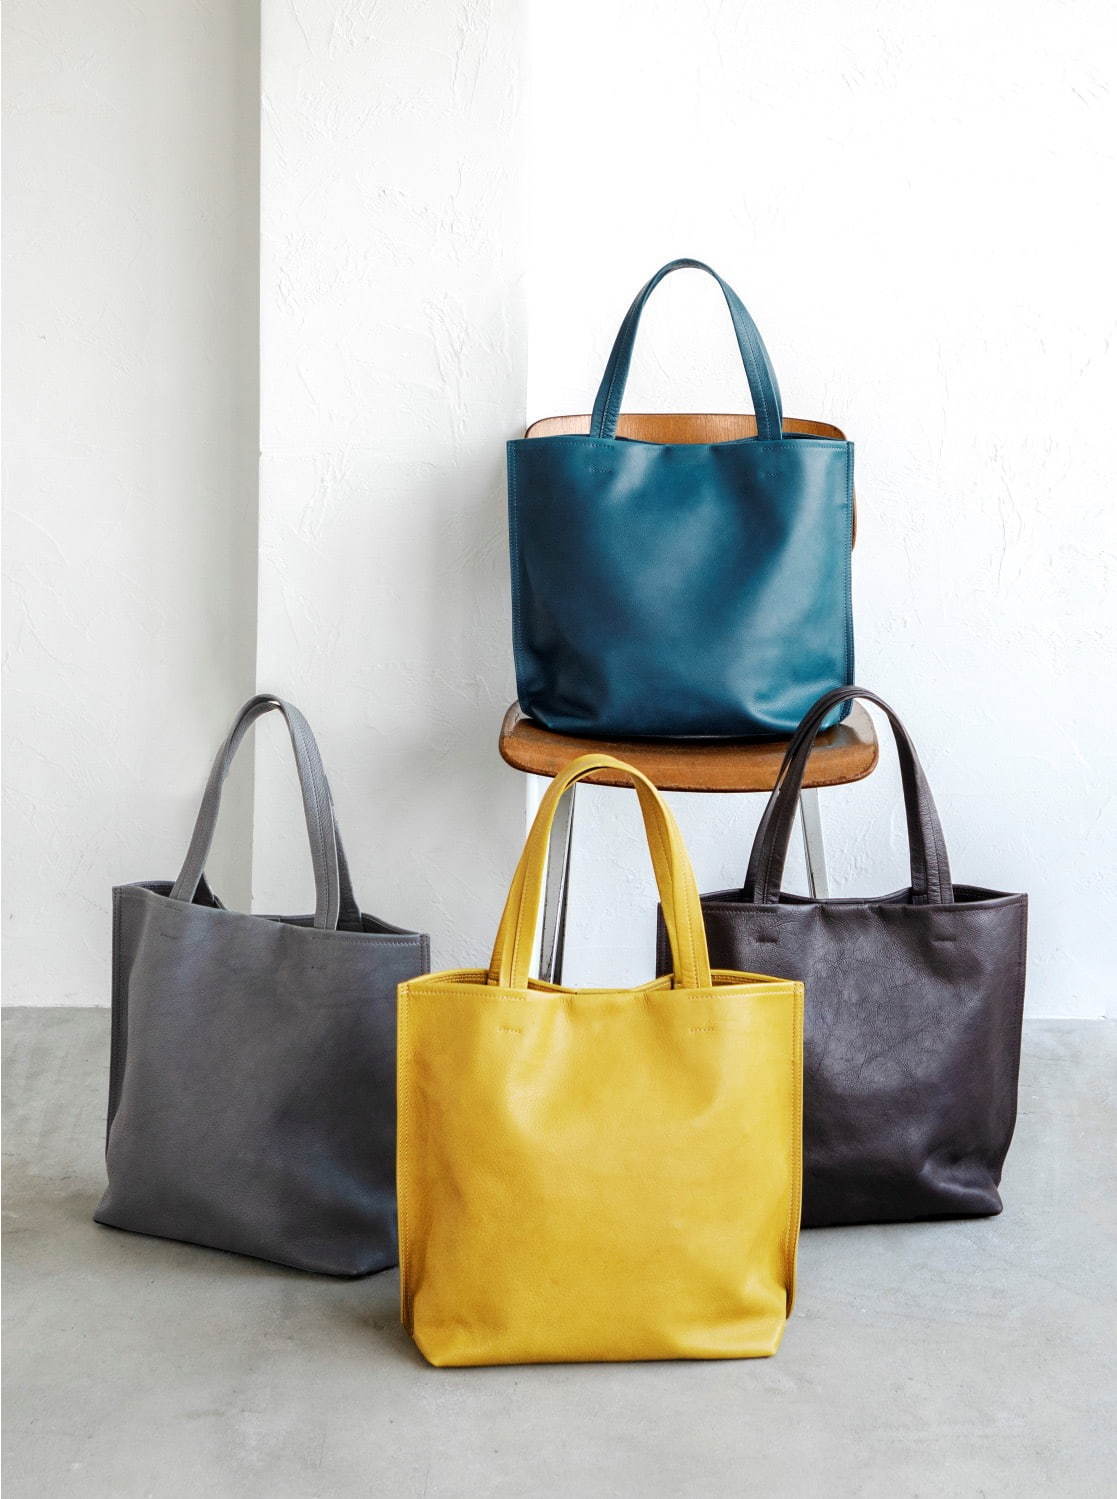 土屋鞄製造所“夕暮れの海”カラーのレザートートバッグ「カラーダイアリー」ブルーやブラウンなど4色 - ファッションプレス